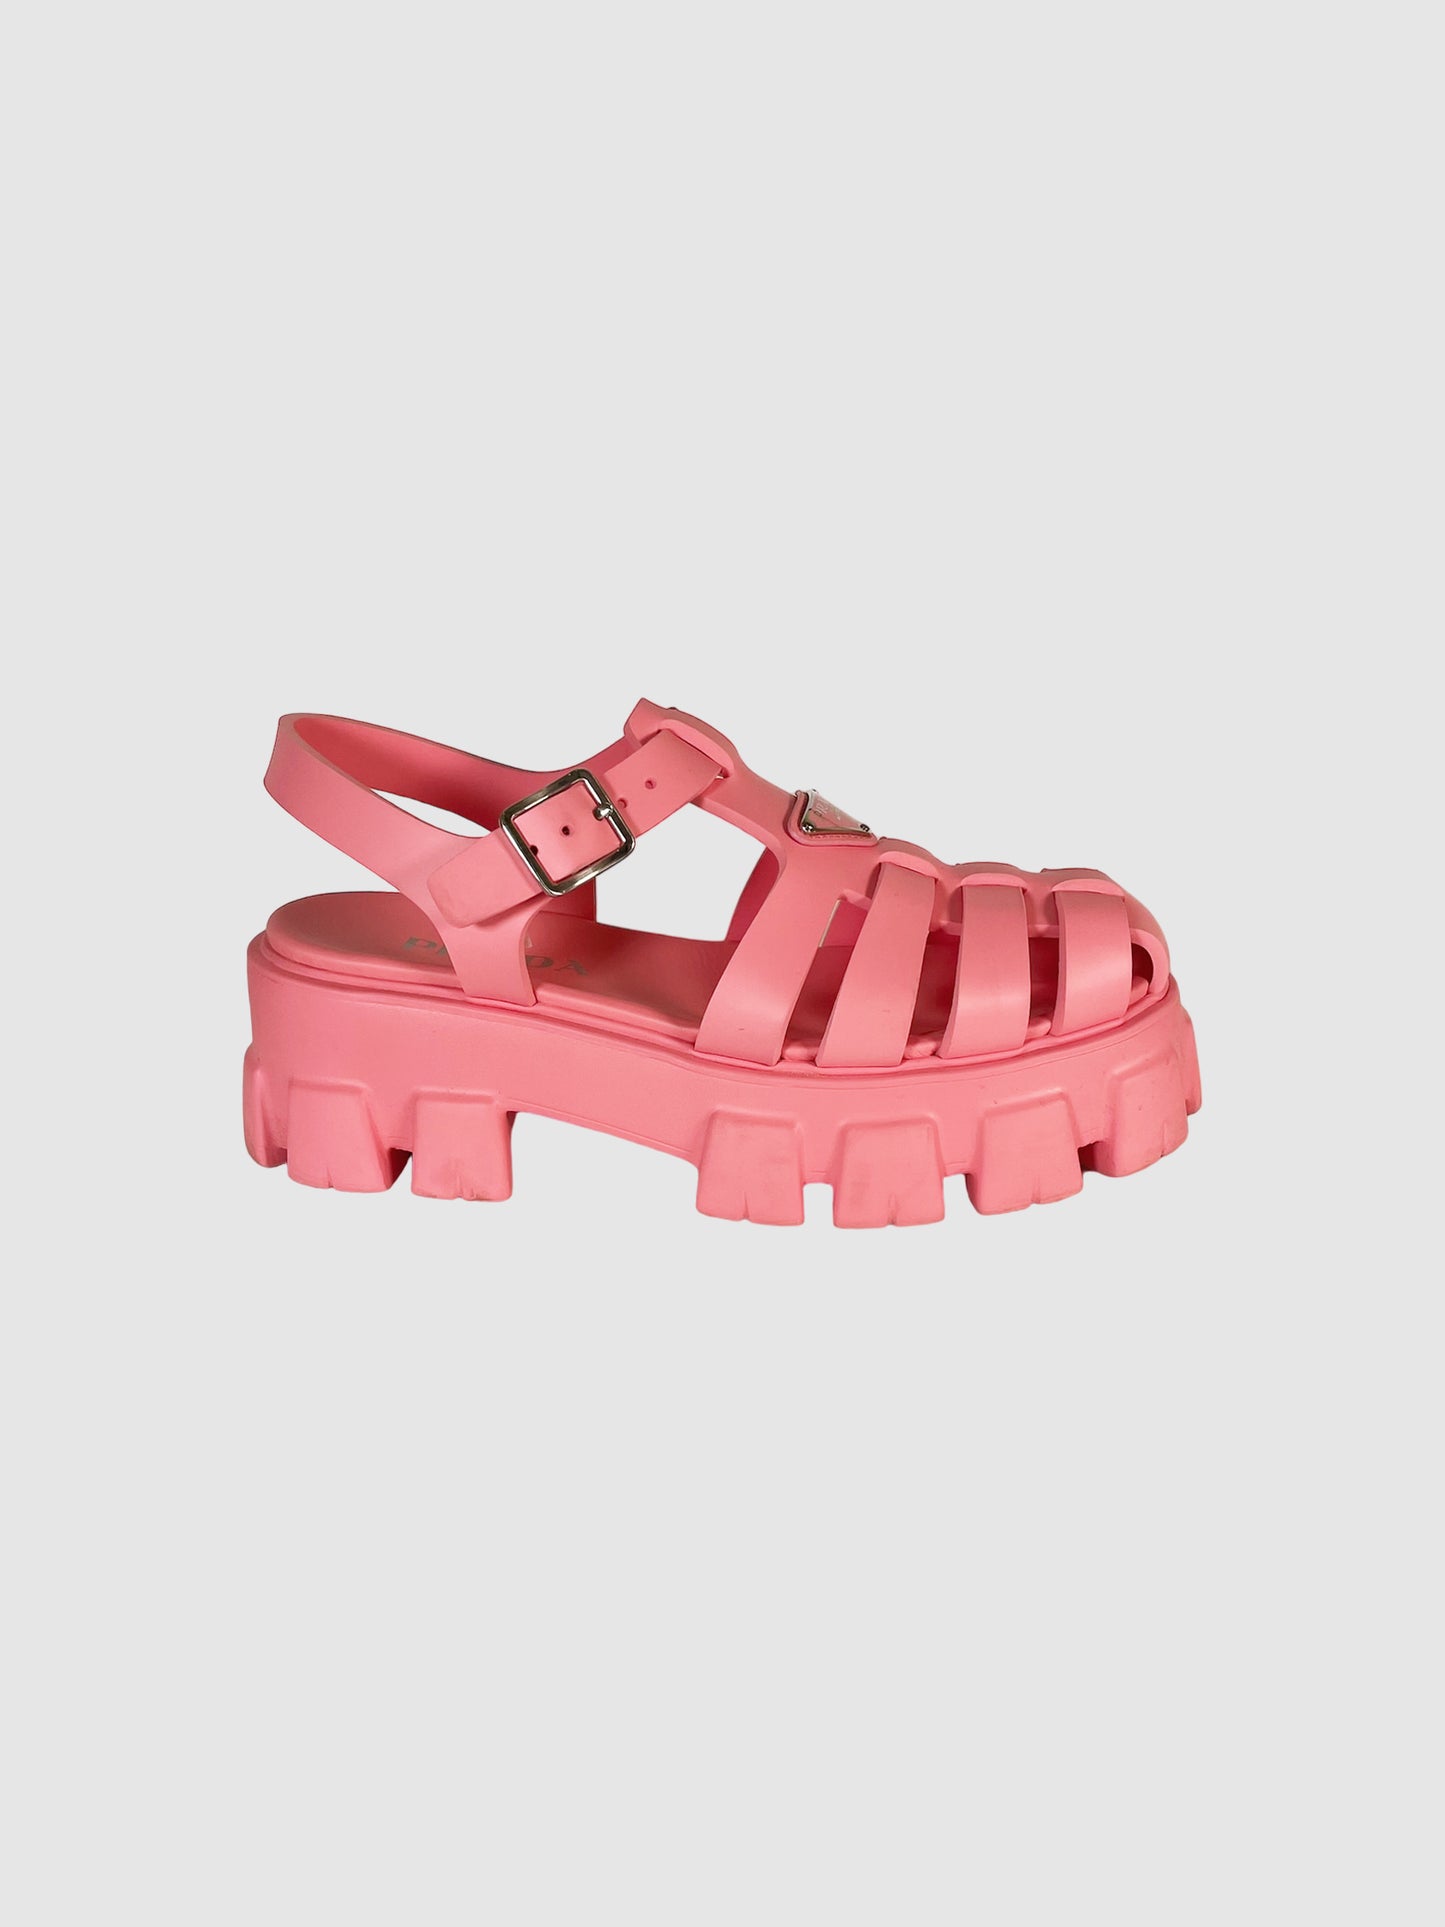 Prada Foam Rubber Sandals - Size 40